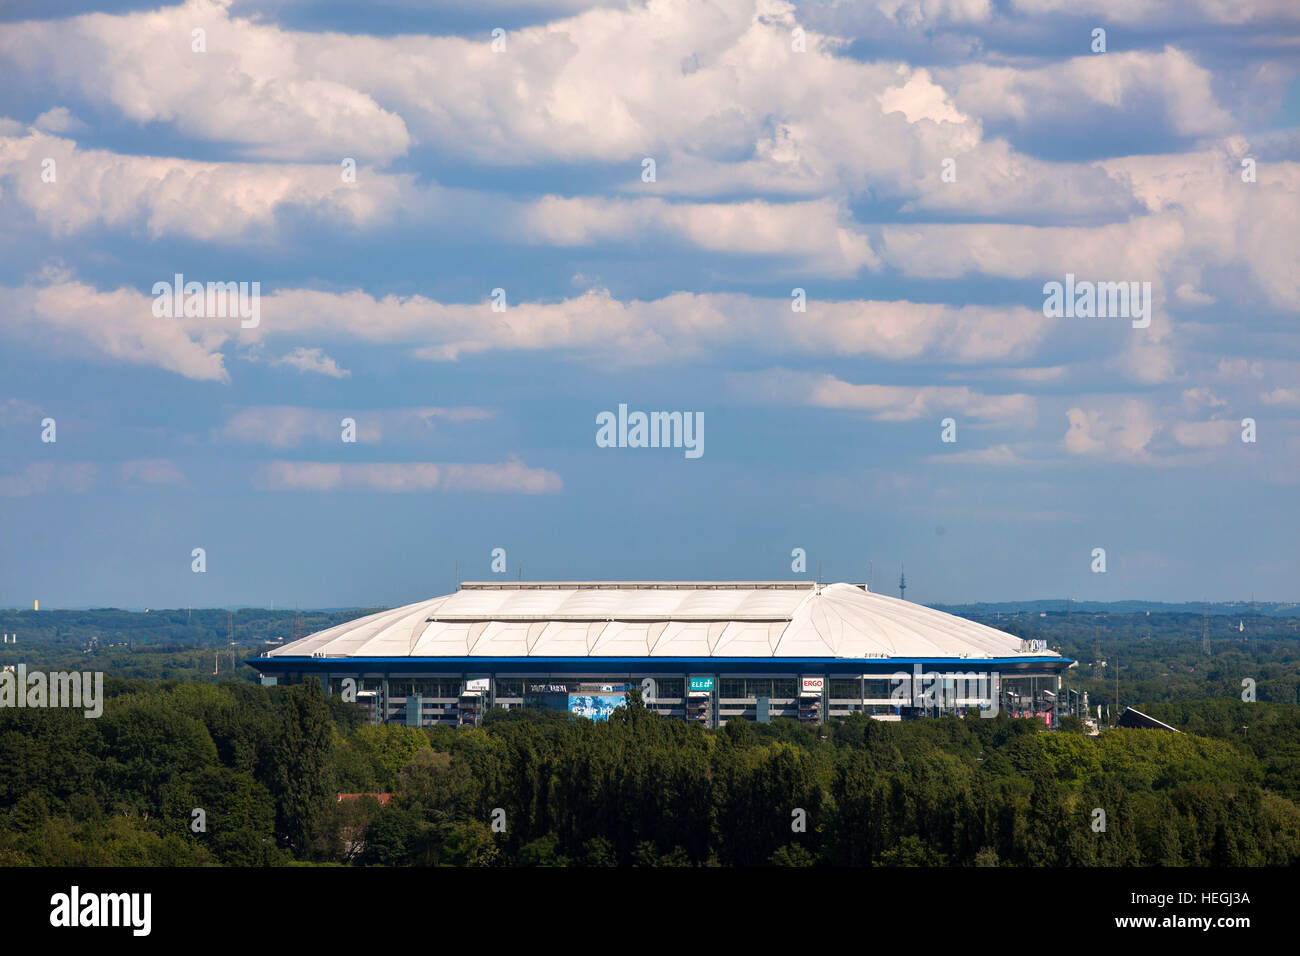 Germany, Gelsenkirchen, the soccer stadium Veltins-Arena, Arena auf Schalke. Stock Photo